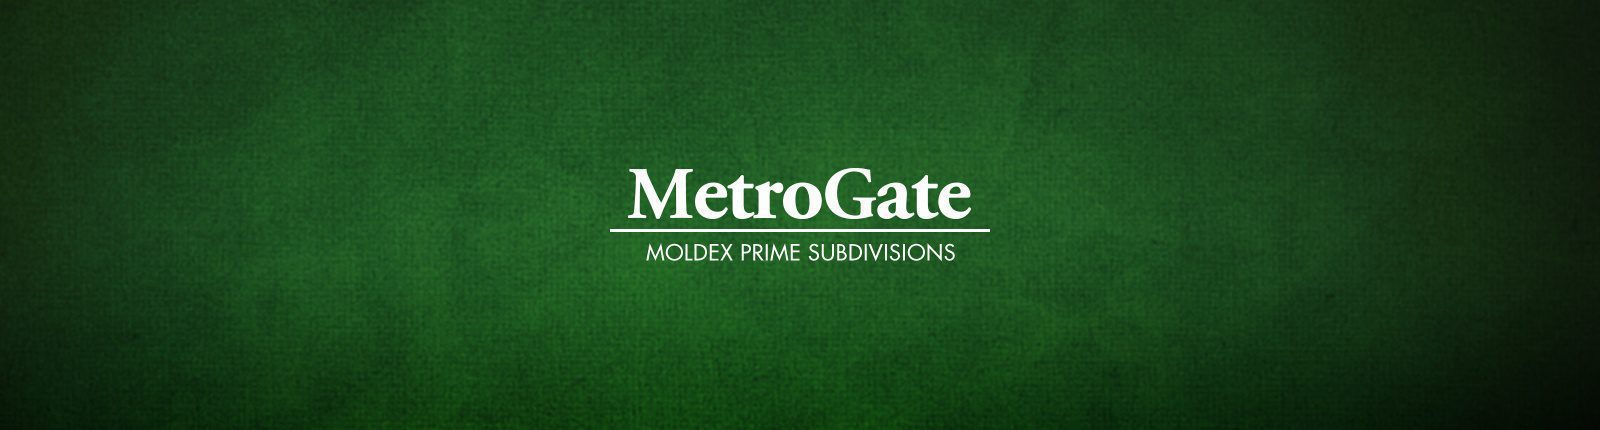 MetroGate: Moldex Prime Subdivisions